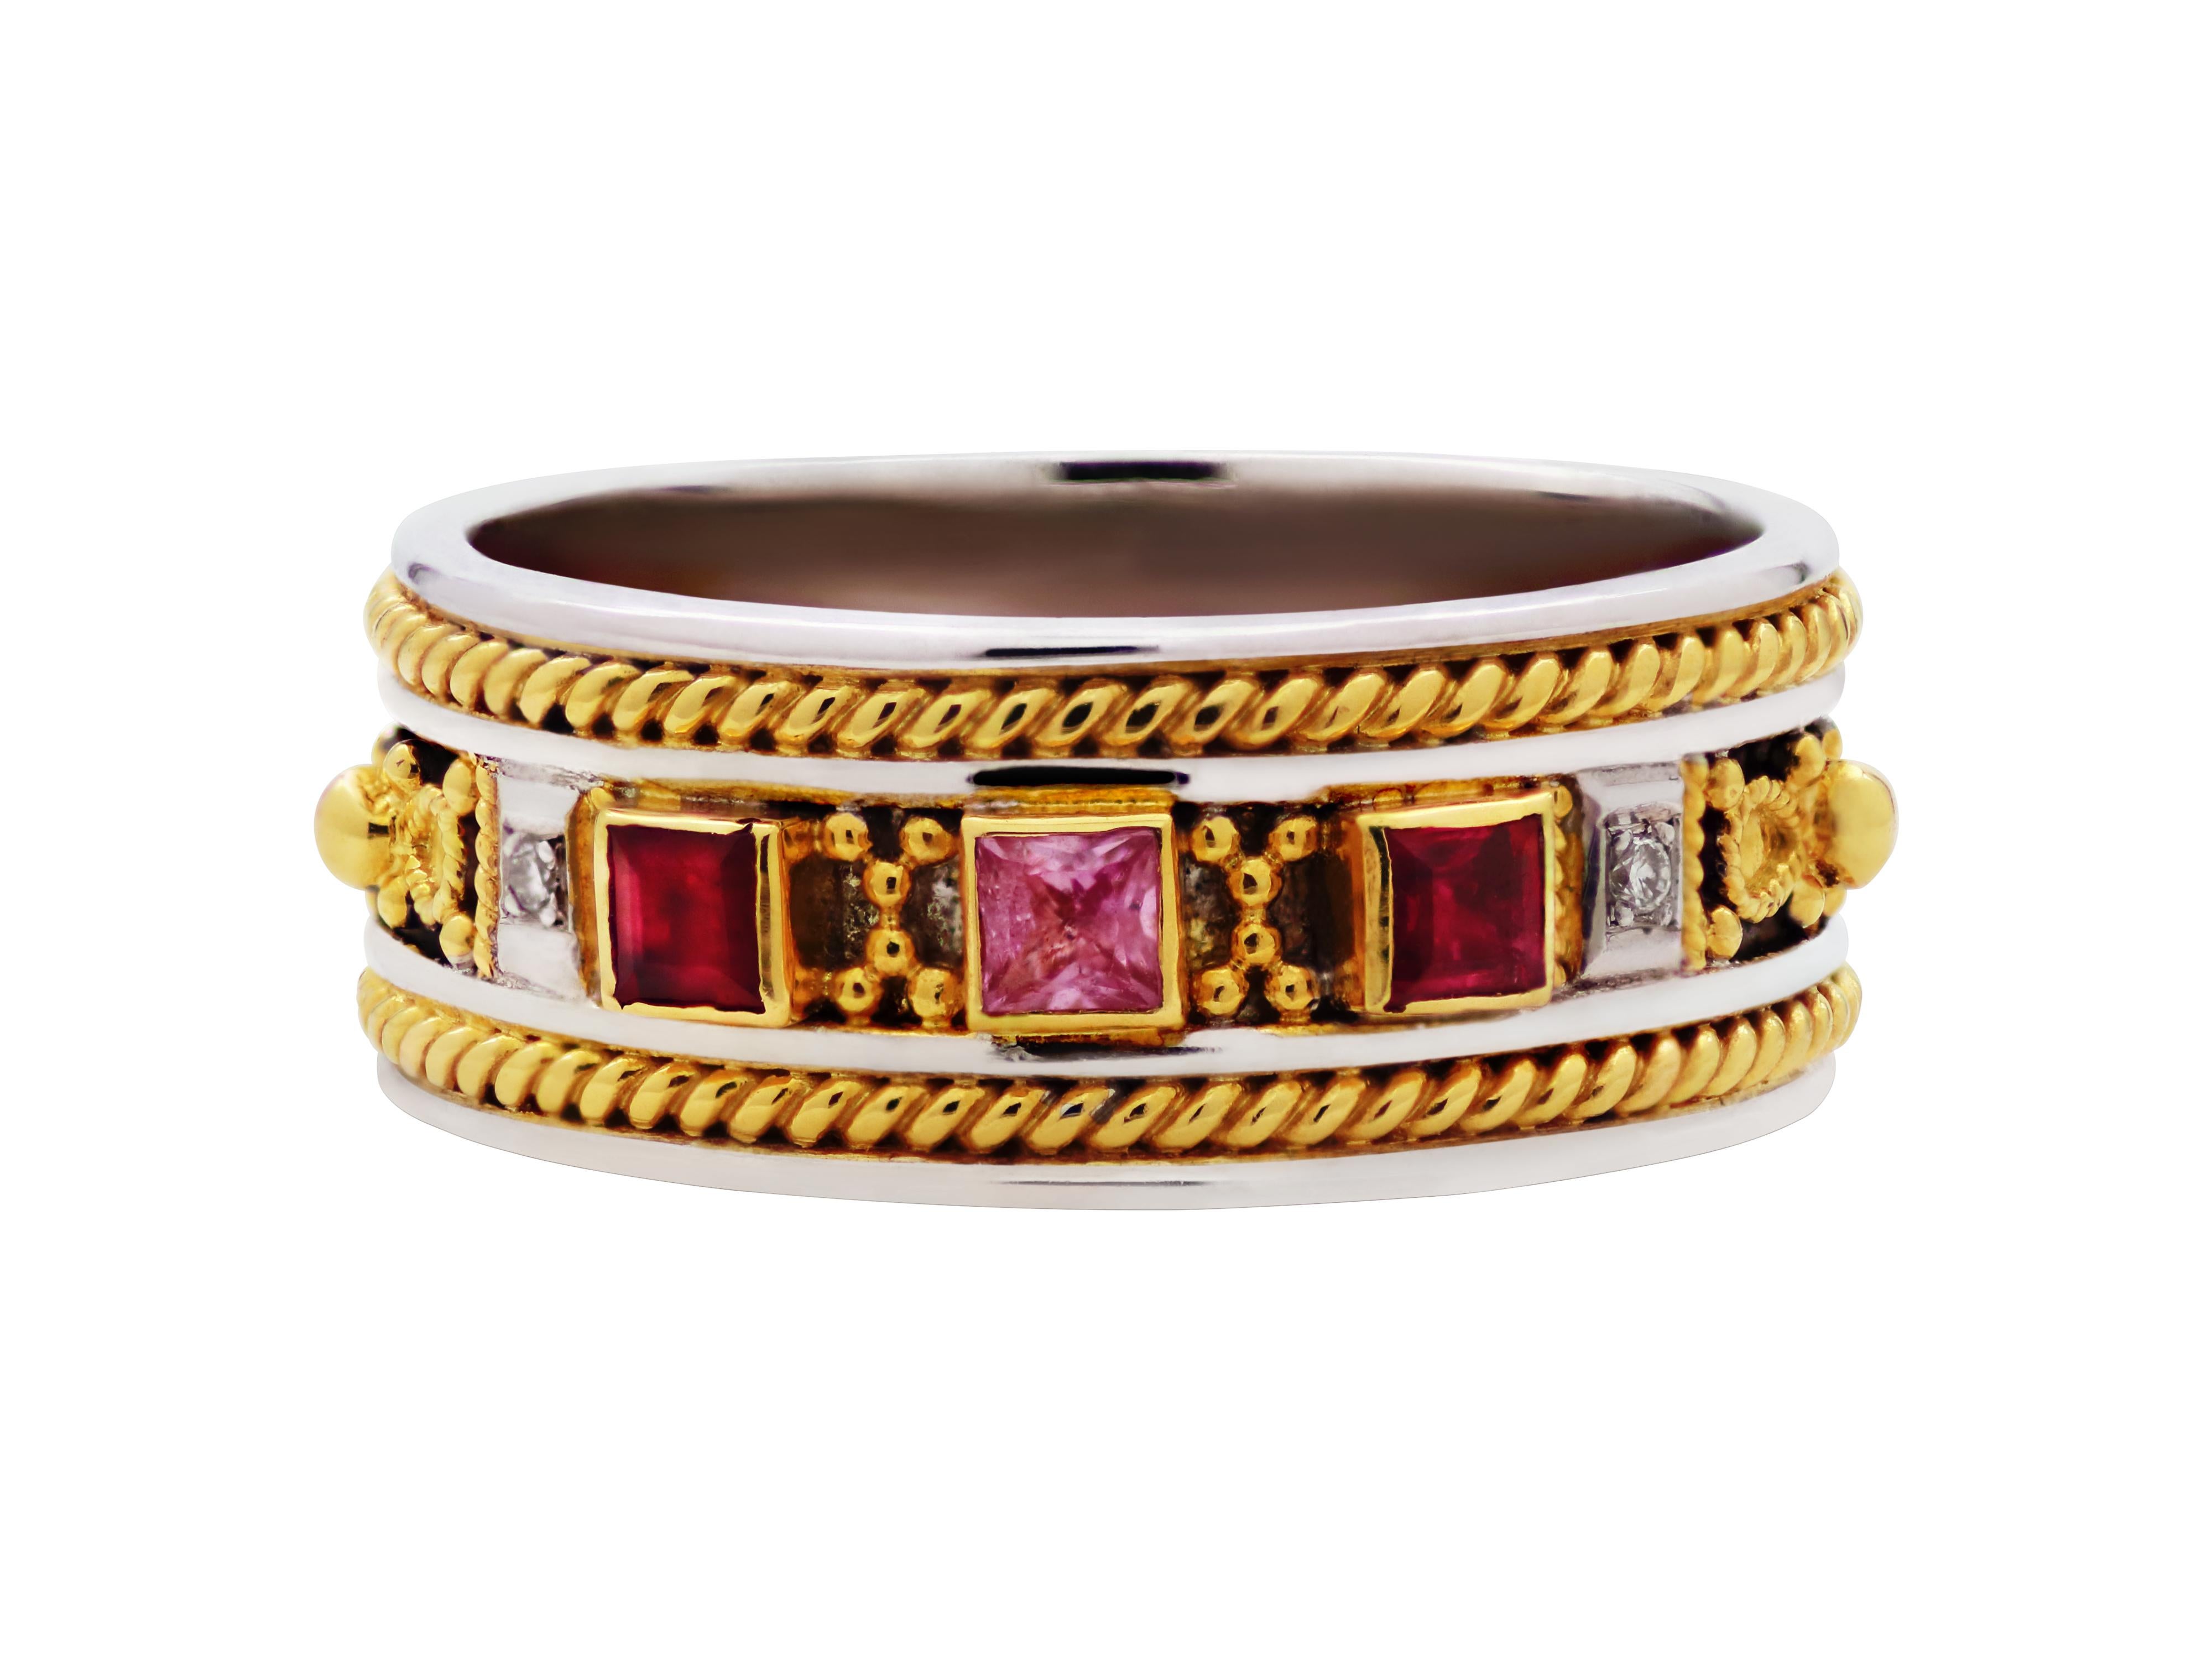 Byzantinischer Ring in einer schönen Kombination mit 18k Gold und 925 Silber. Rosa Saphire, Rubine und weiße Diamanten verleihen ihm viel Charakter in einer sehr alltäglichen Größe. Unsere berühmten handgefertigten Filigran- und Granulationsarbeiten